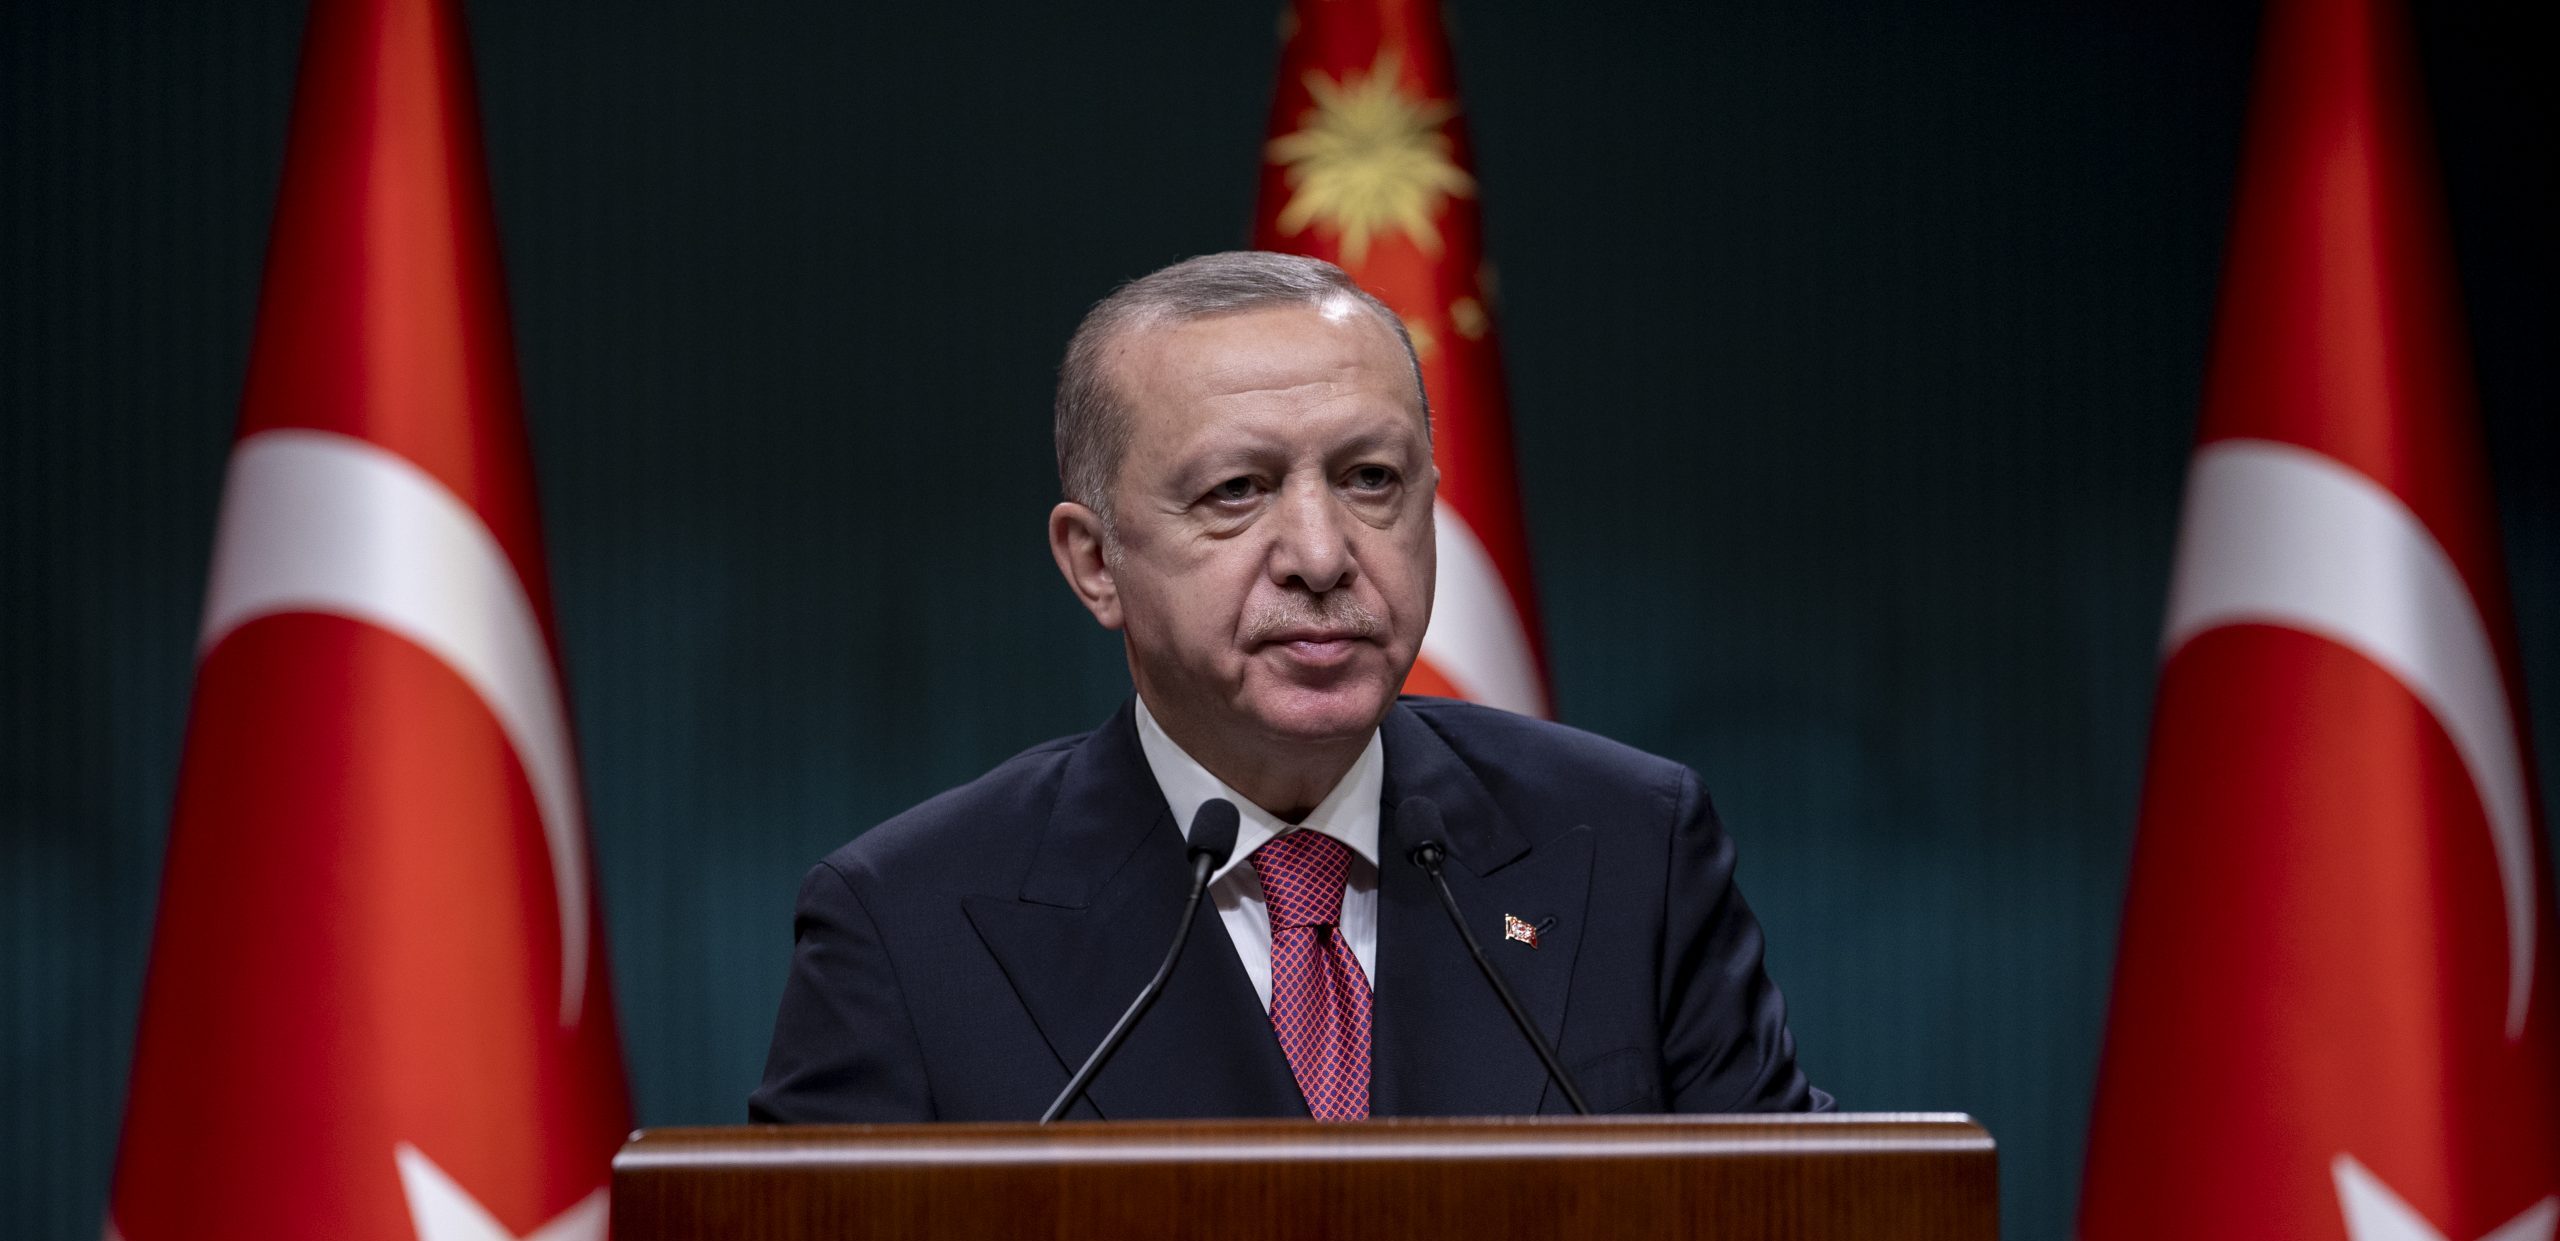 Cumhurbaşkanı Erdoğan: “Yenilenebilir enerjide büyük bir başarı hikayesine imza atıyoruz”